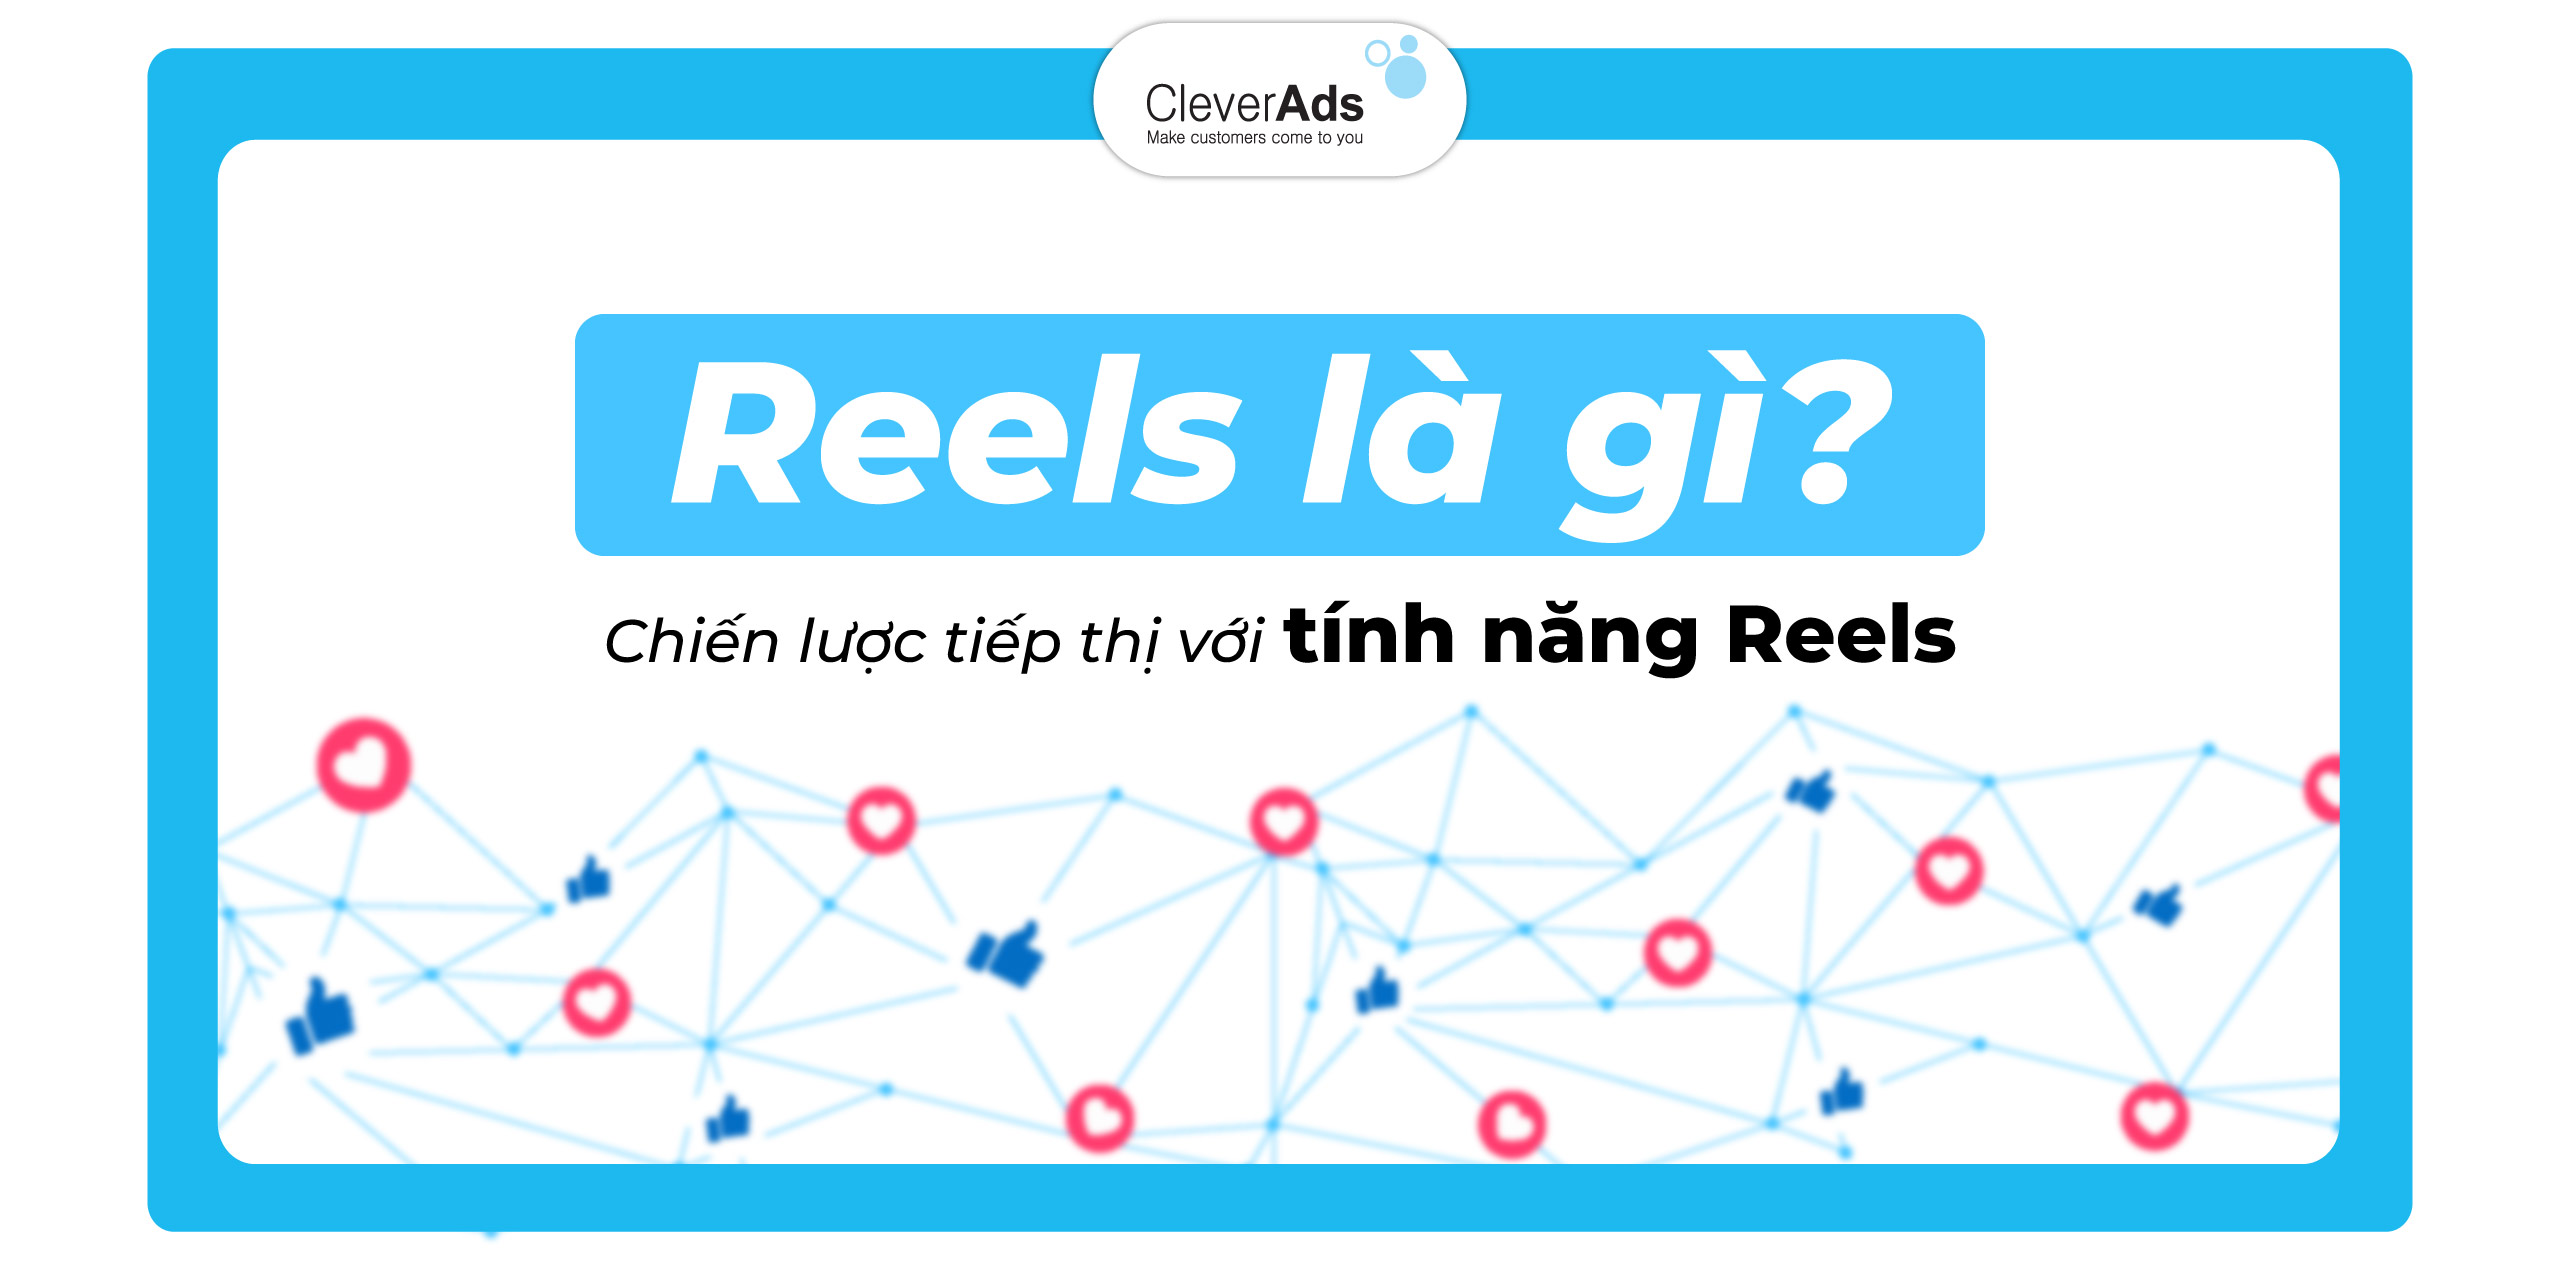 Reels là gì? Chiến lược Marketing sử dụng tính năng Reels